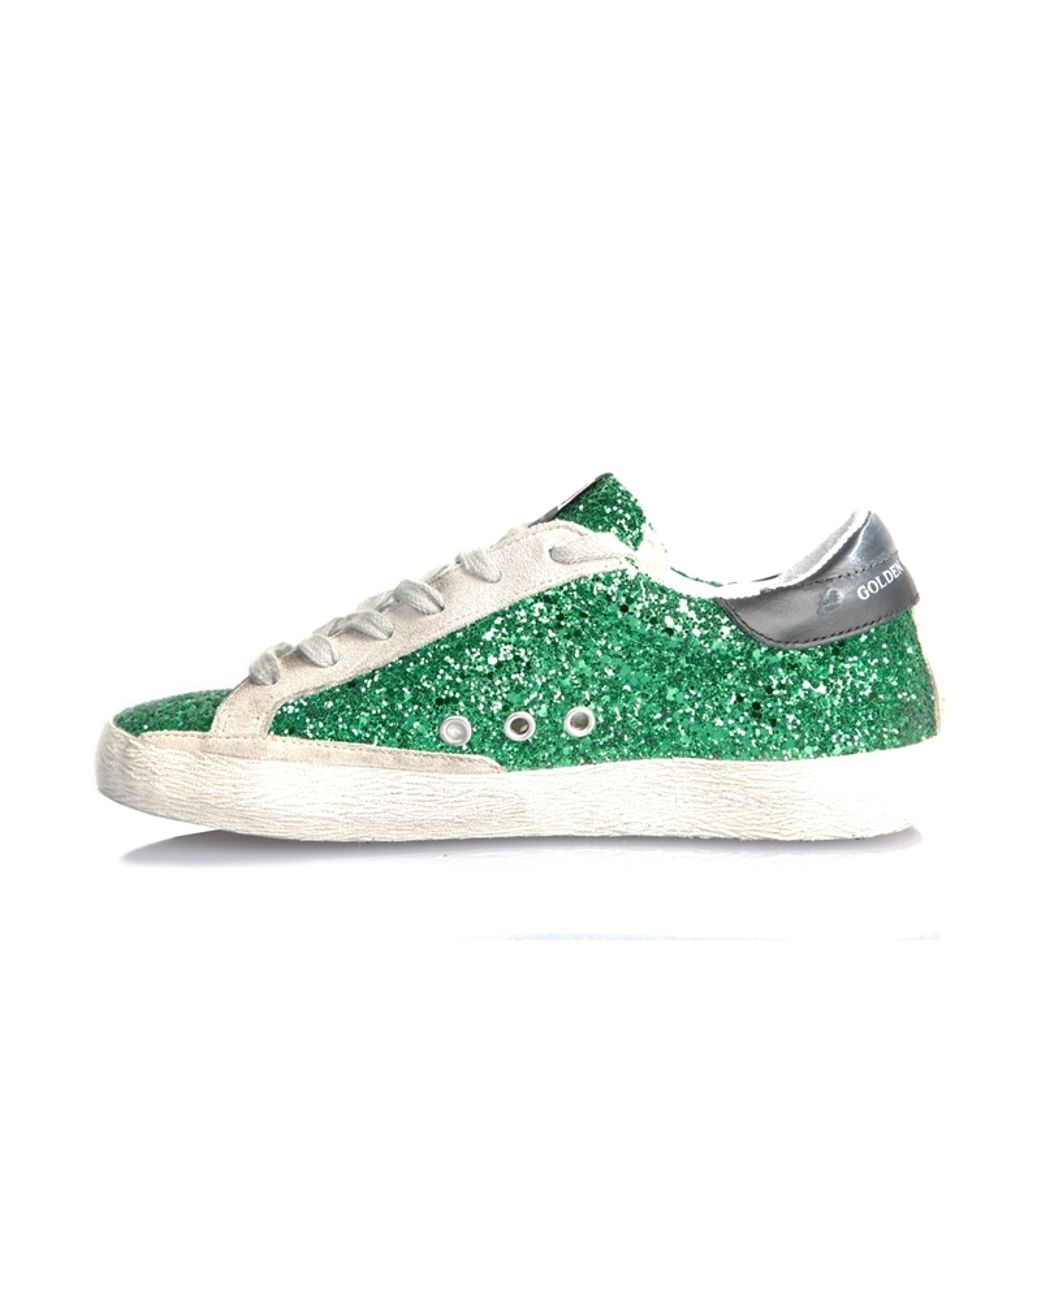 Golden Goose Superstar Sneakers Emerald Green Glitter | Lyst